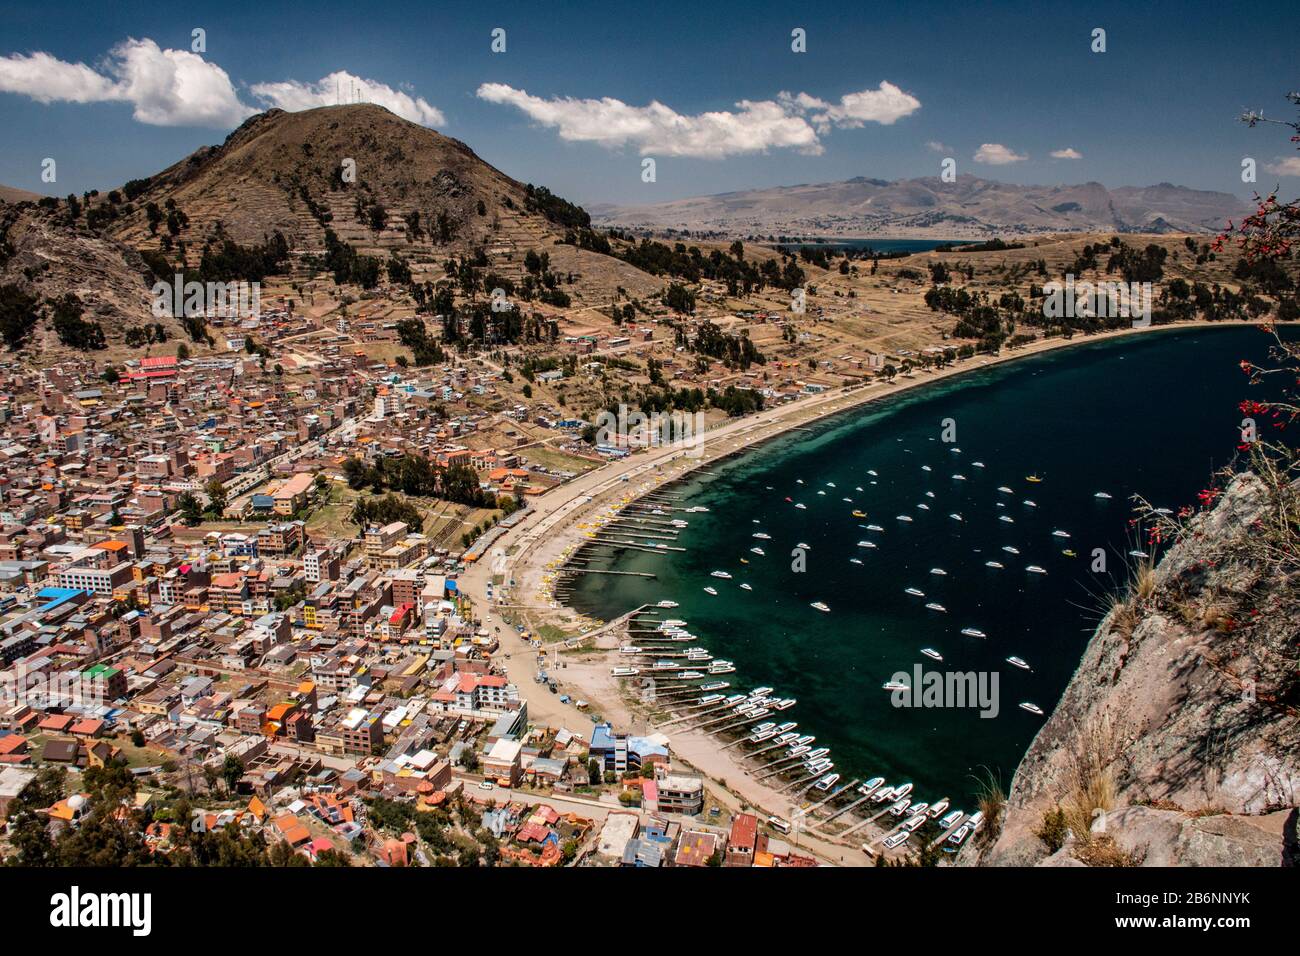 Vue panoramique sur le lac Titicaca Copacabana, Bolivie Banque D'Images